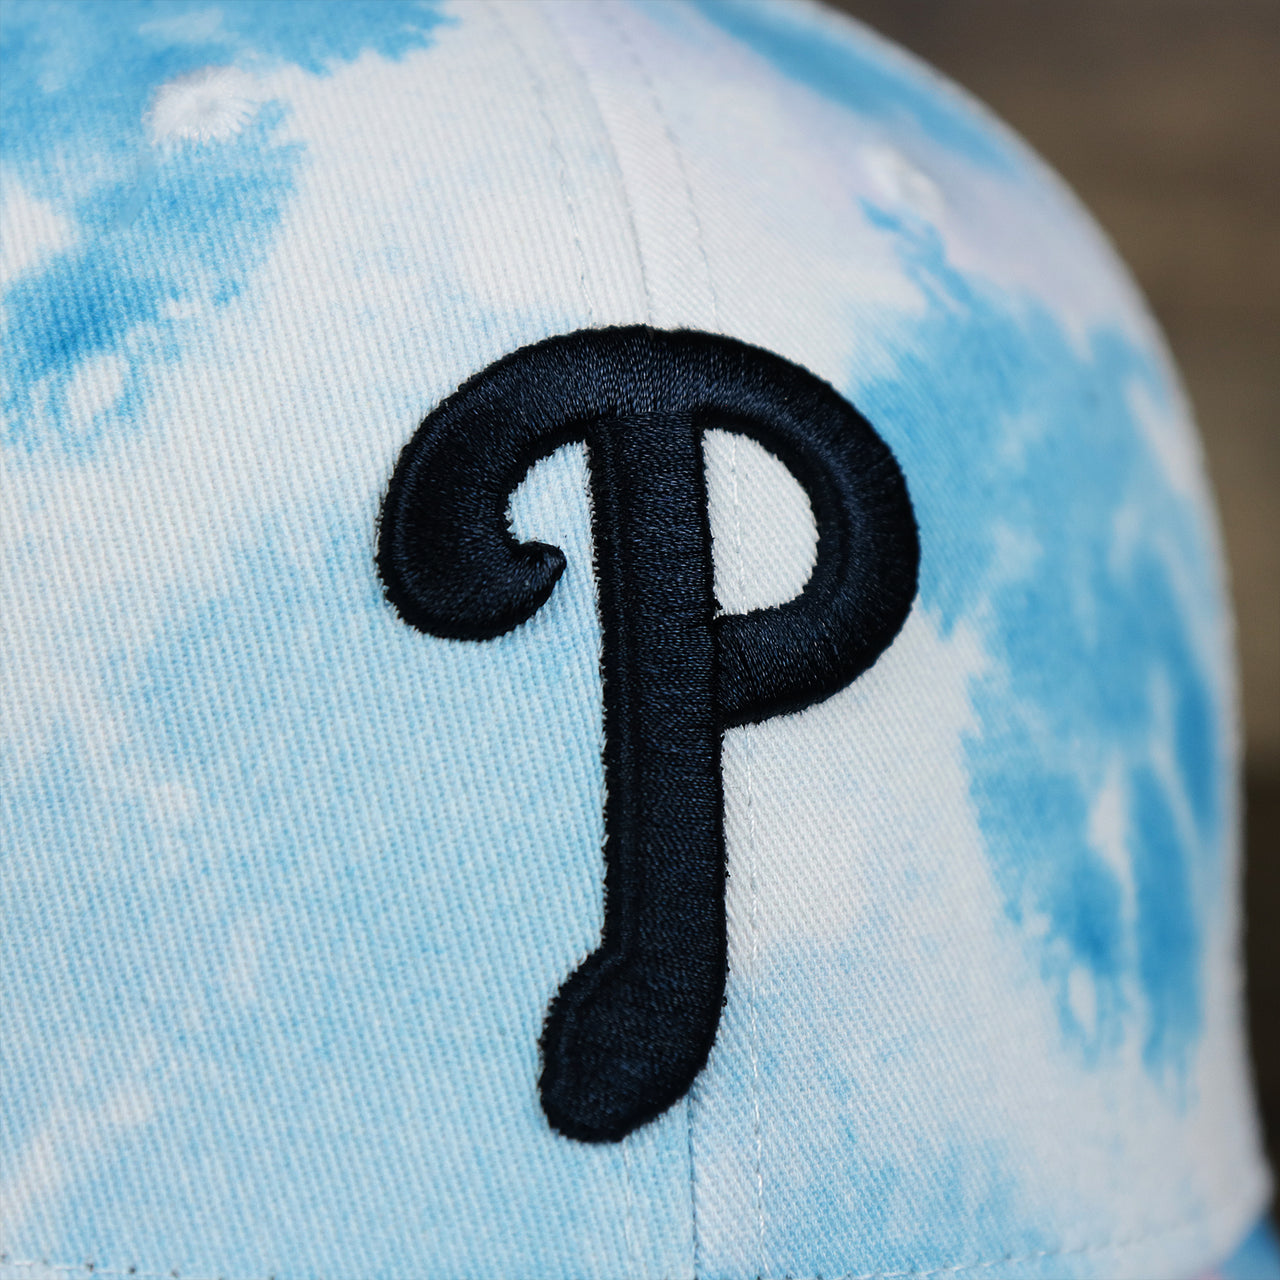 The Phillies Logo on the Women’s Philadelphia Phillies Tie Dye Print Gray Bottom Mesh Trucker Hat | White Mesh Snapback